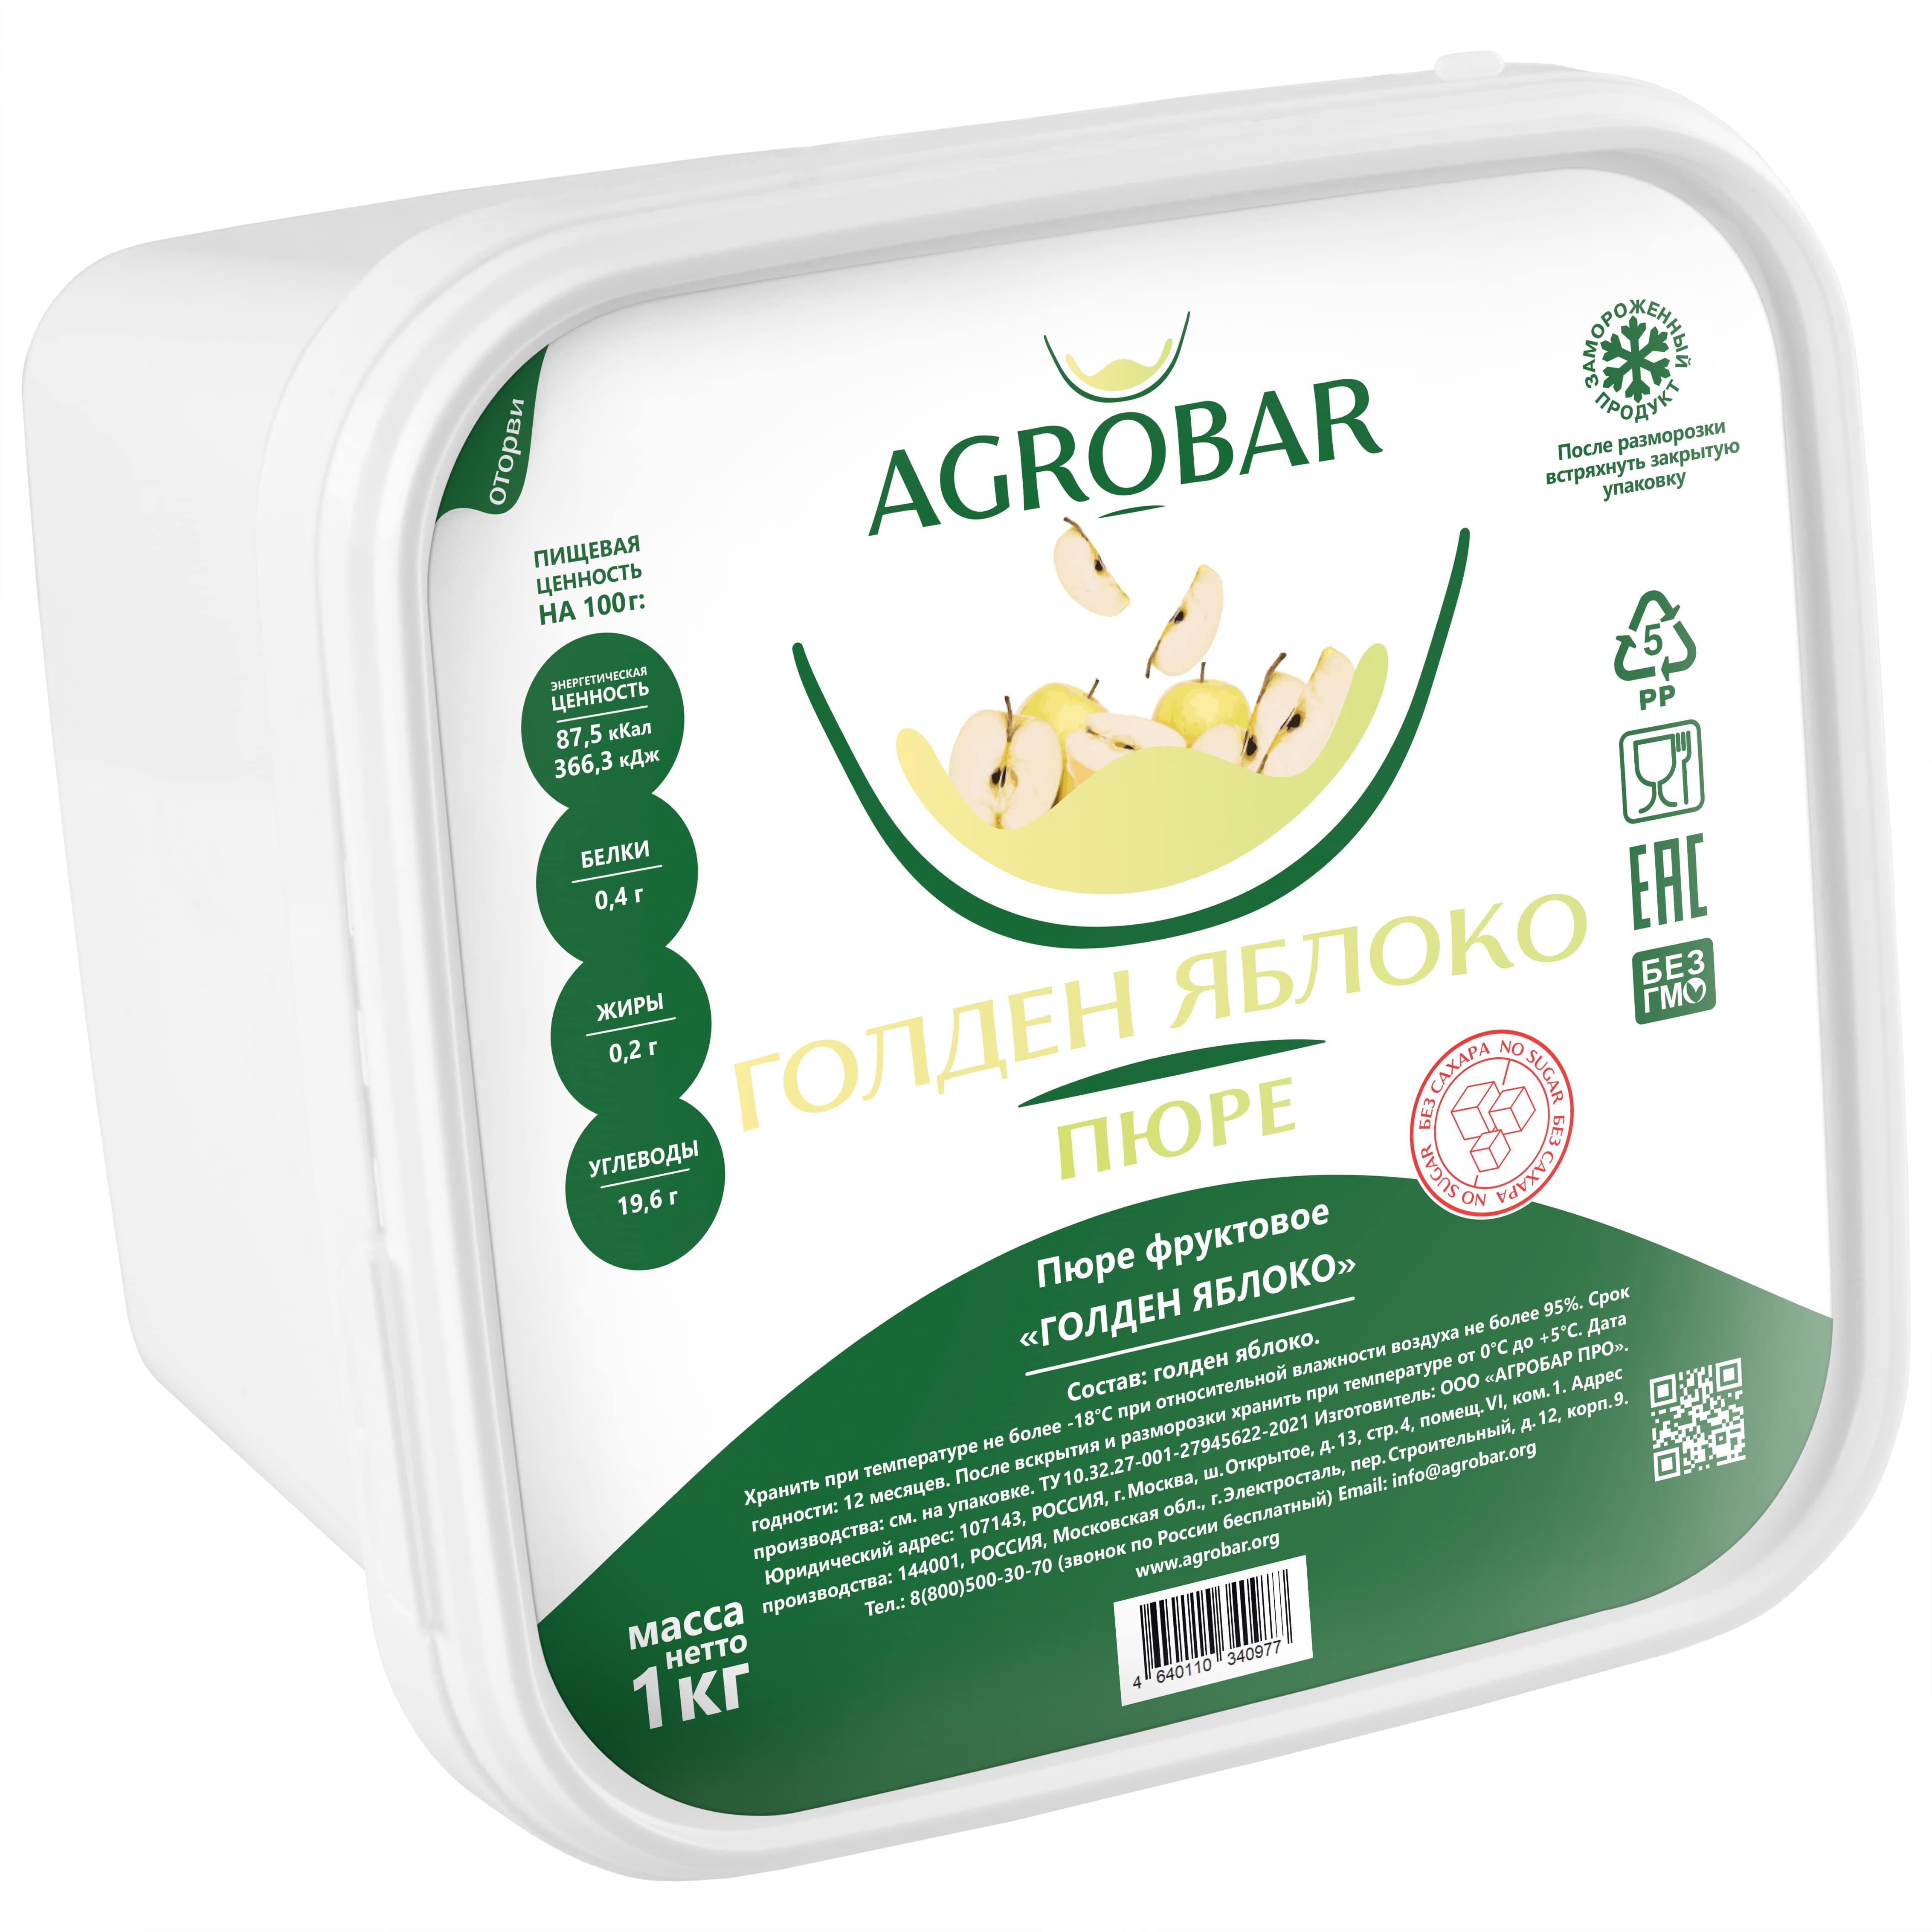 Пюре AGROBAR  Яблоко Гольден 1 кг., пластиковый контейнер